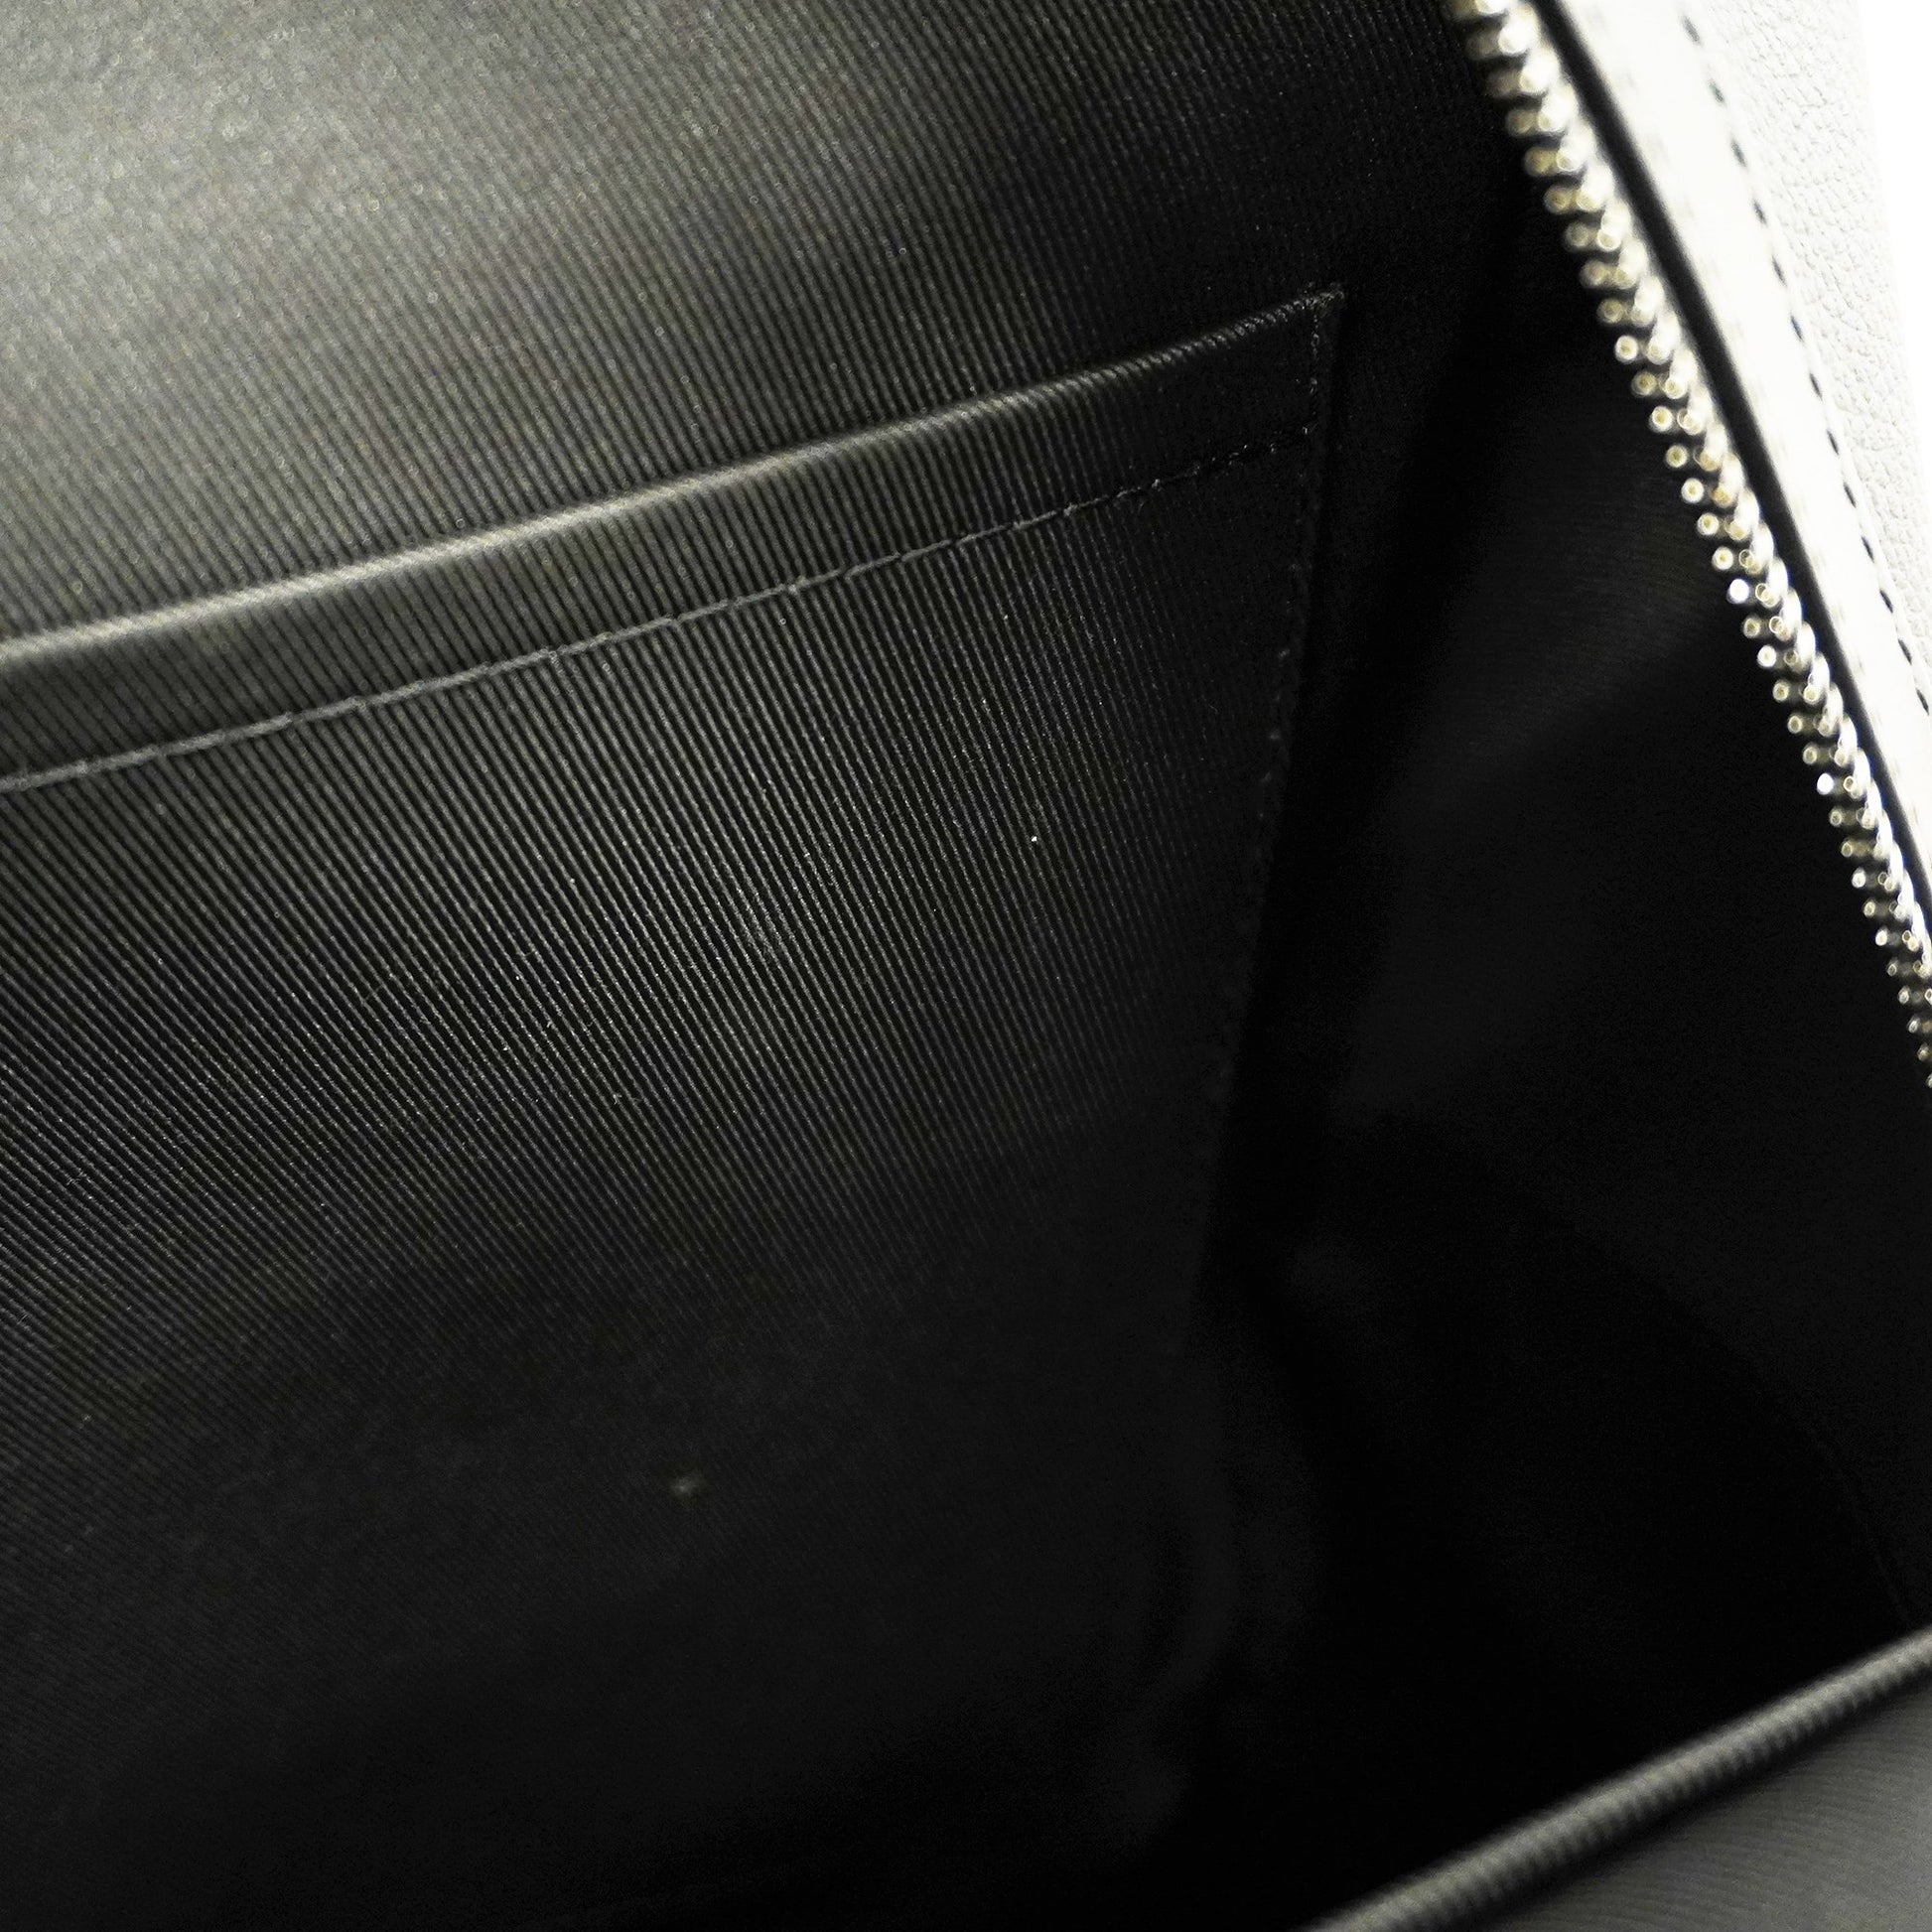 Shop Louis Vuitton Backpack (M57079) by luxurysuite